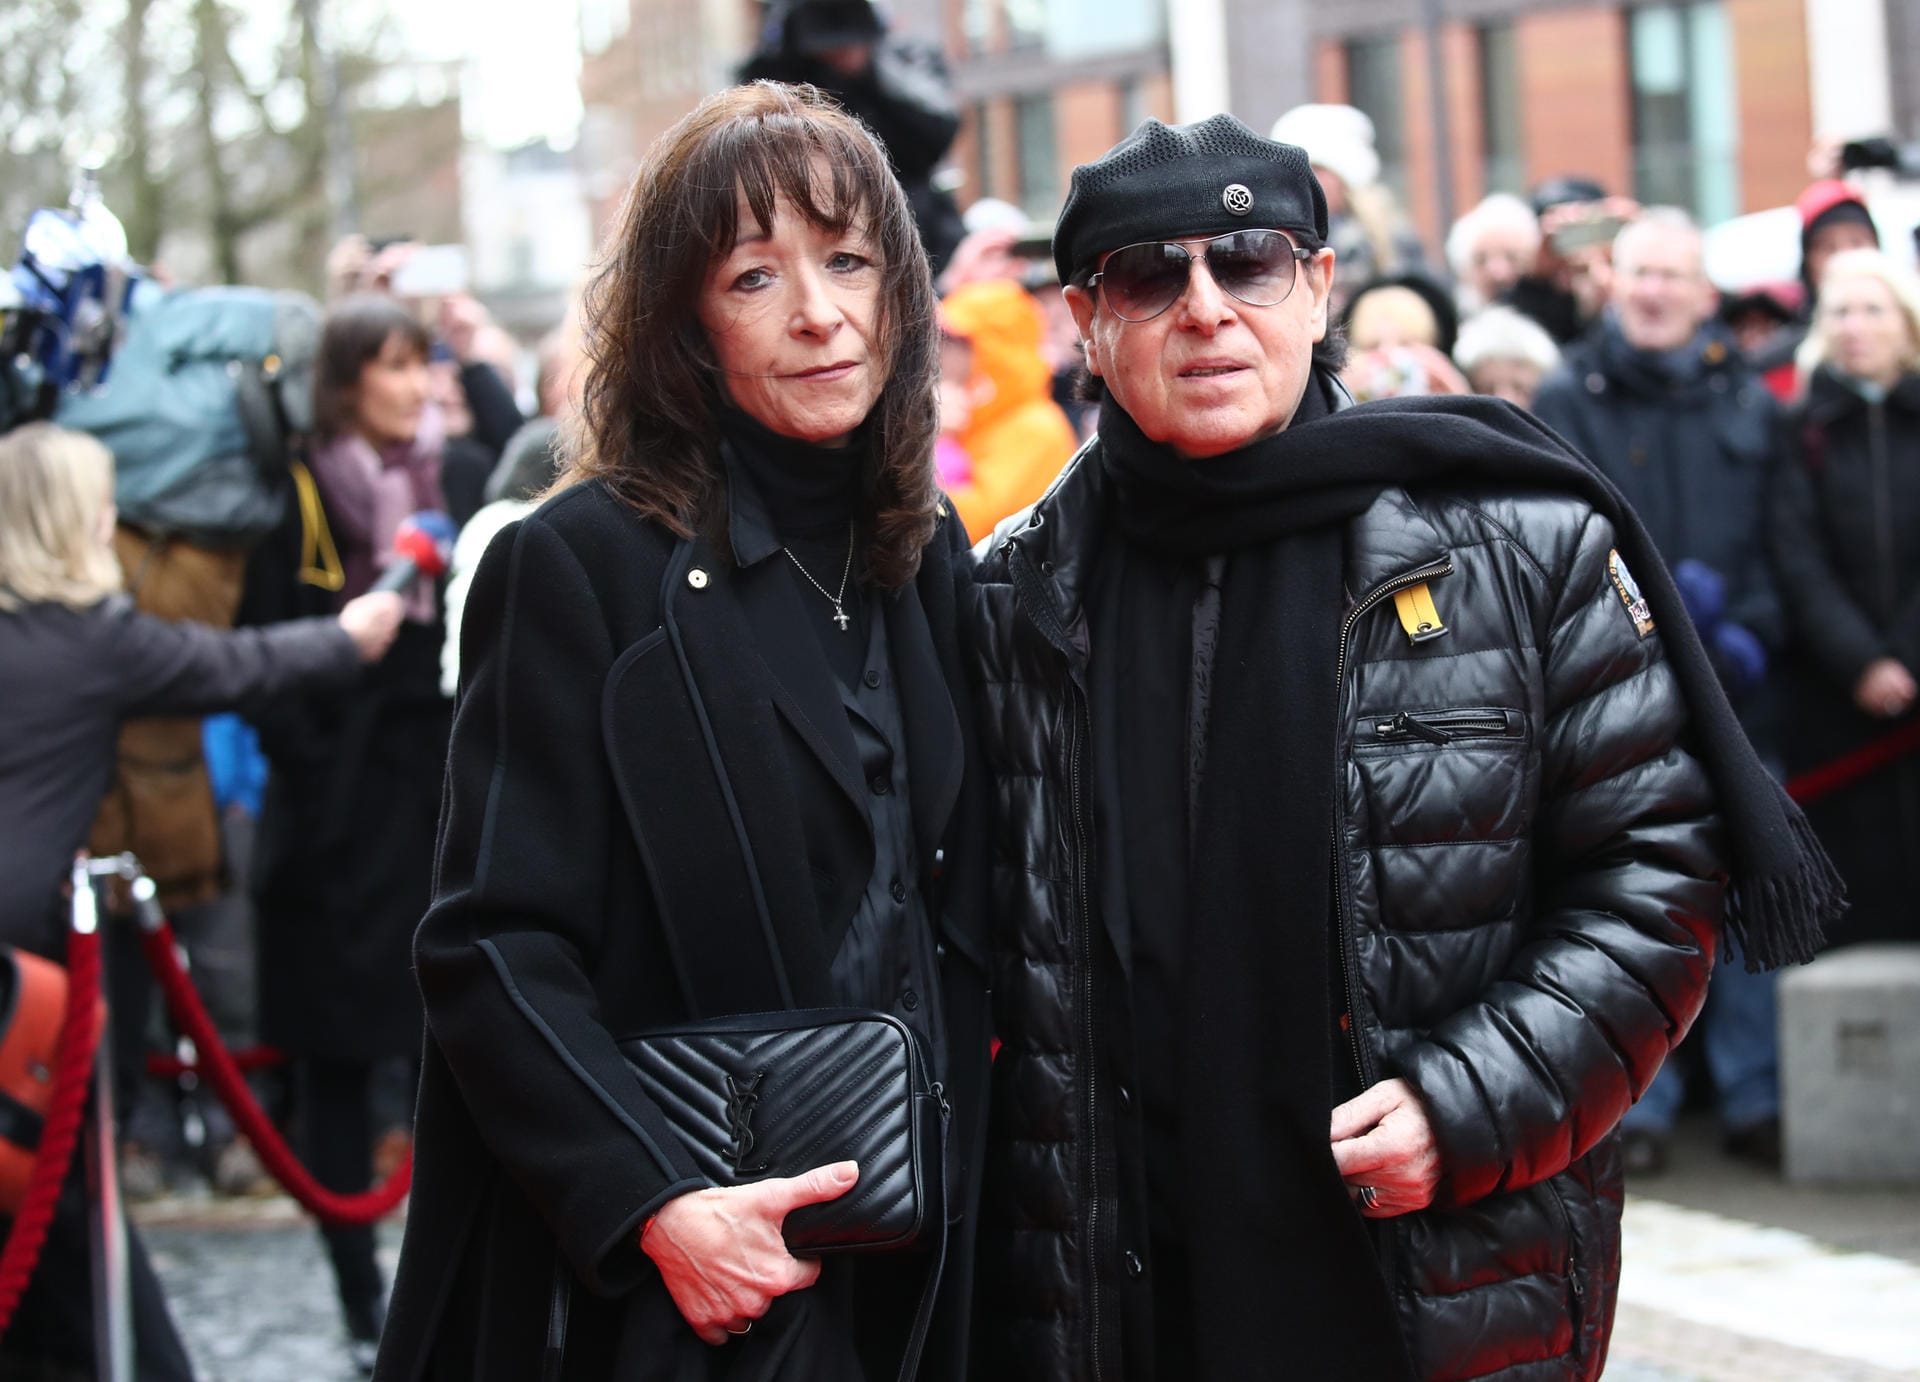 Sänger Klaus Meine und seine Frau Gabi kamen zur Trauerfeier im Michel.